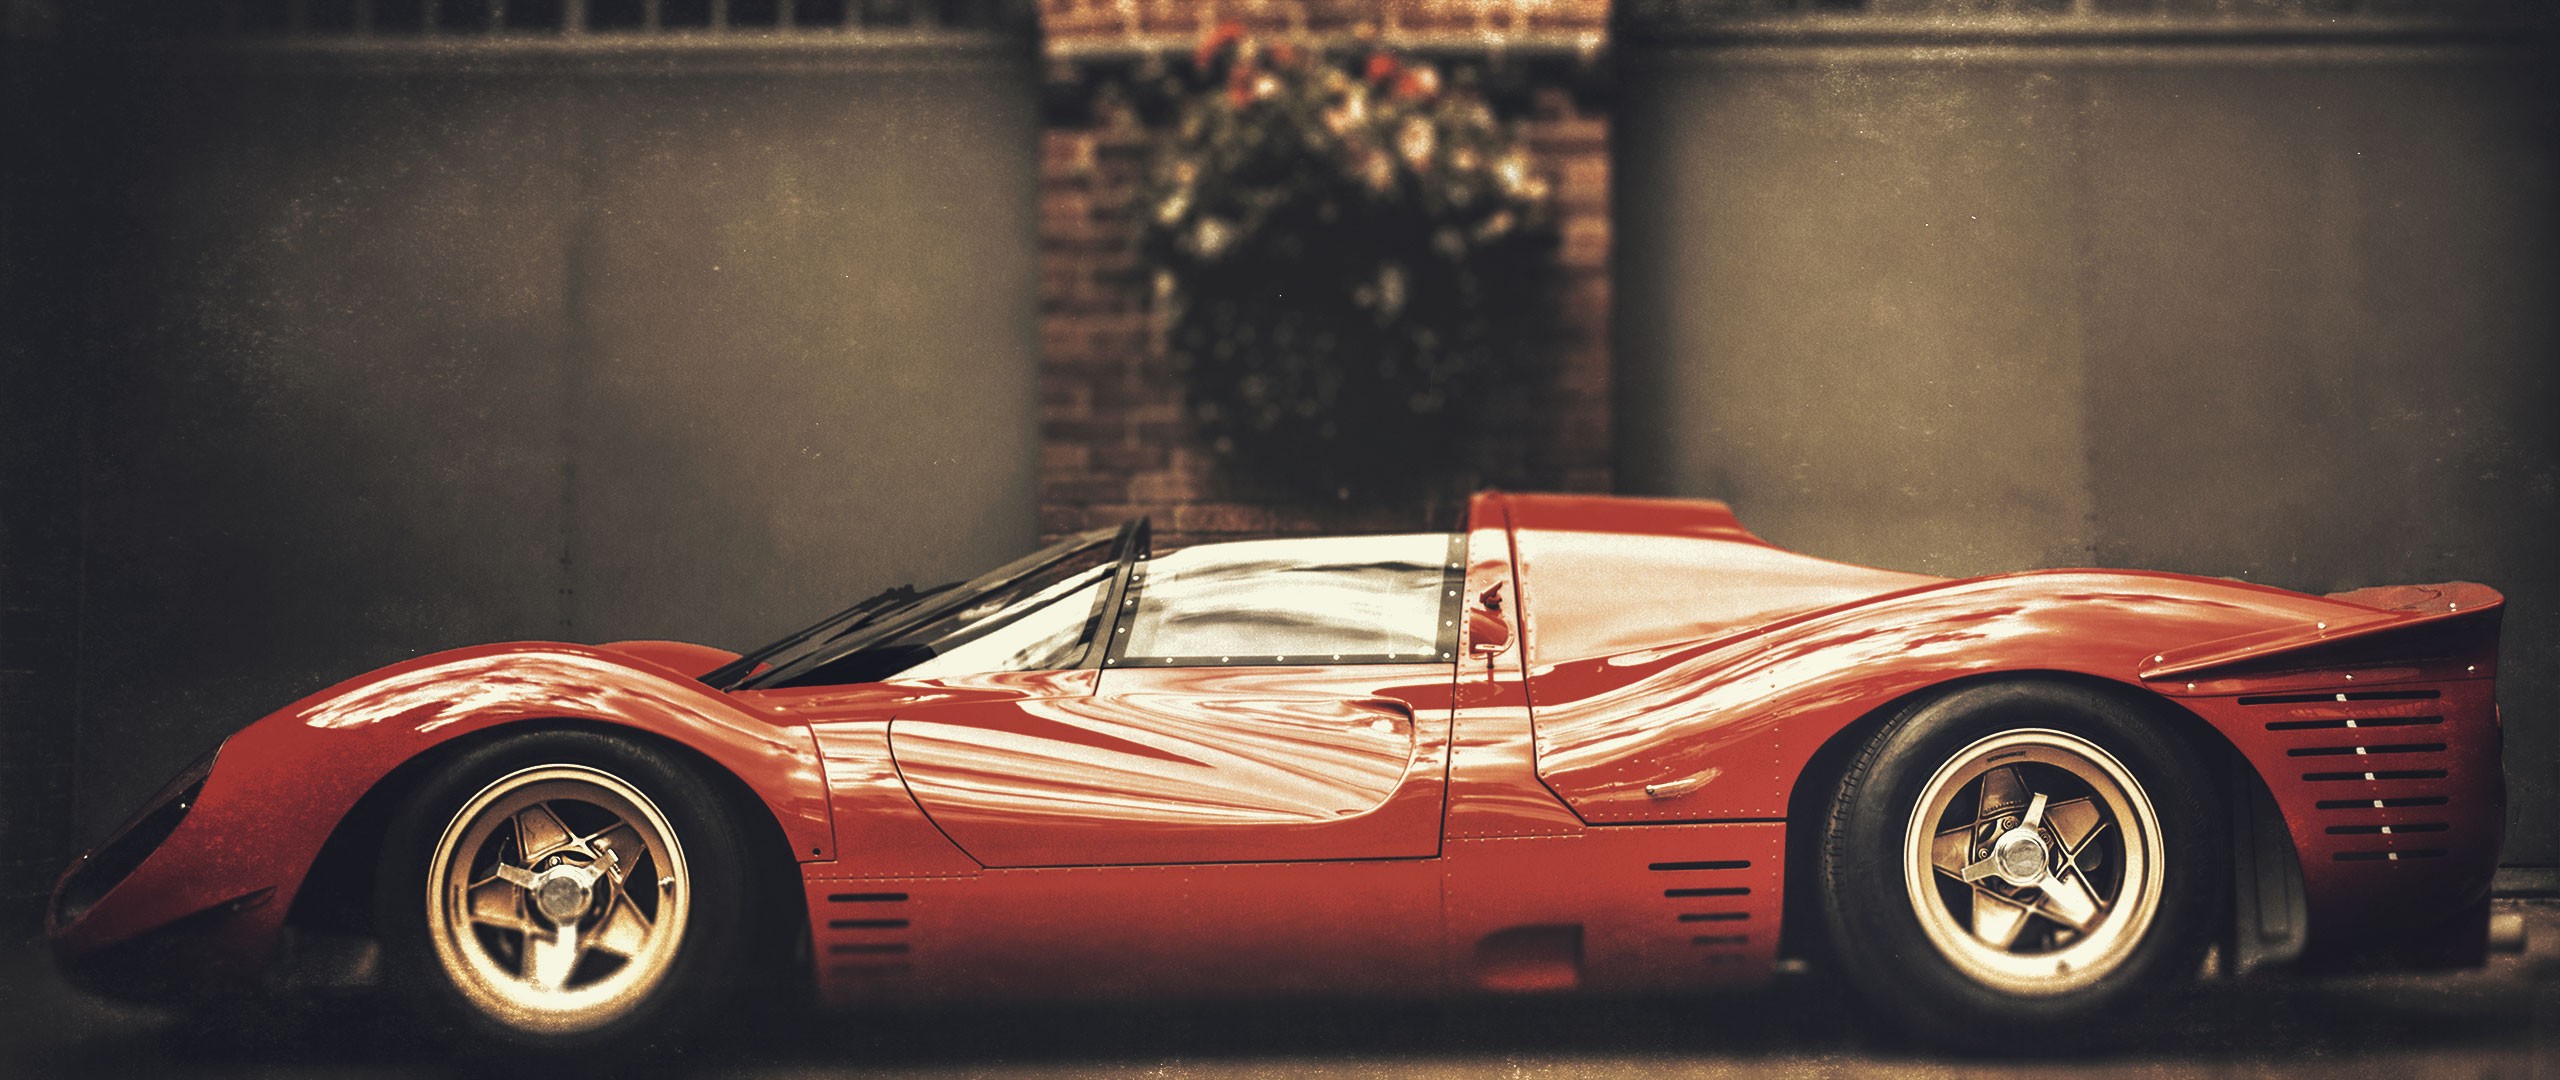 Ferrari, Vintage Car Wallpaper